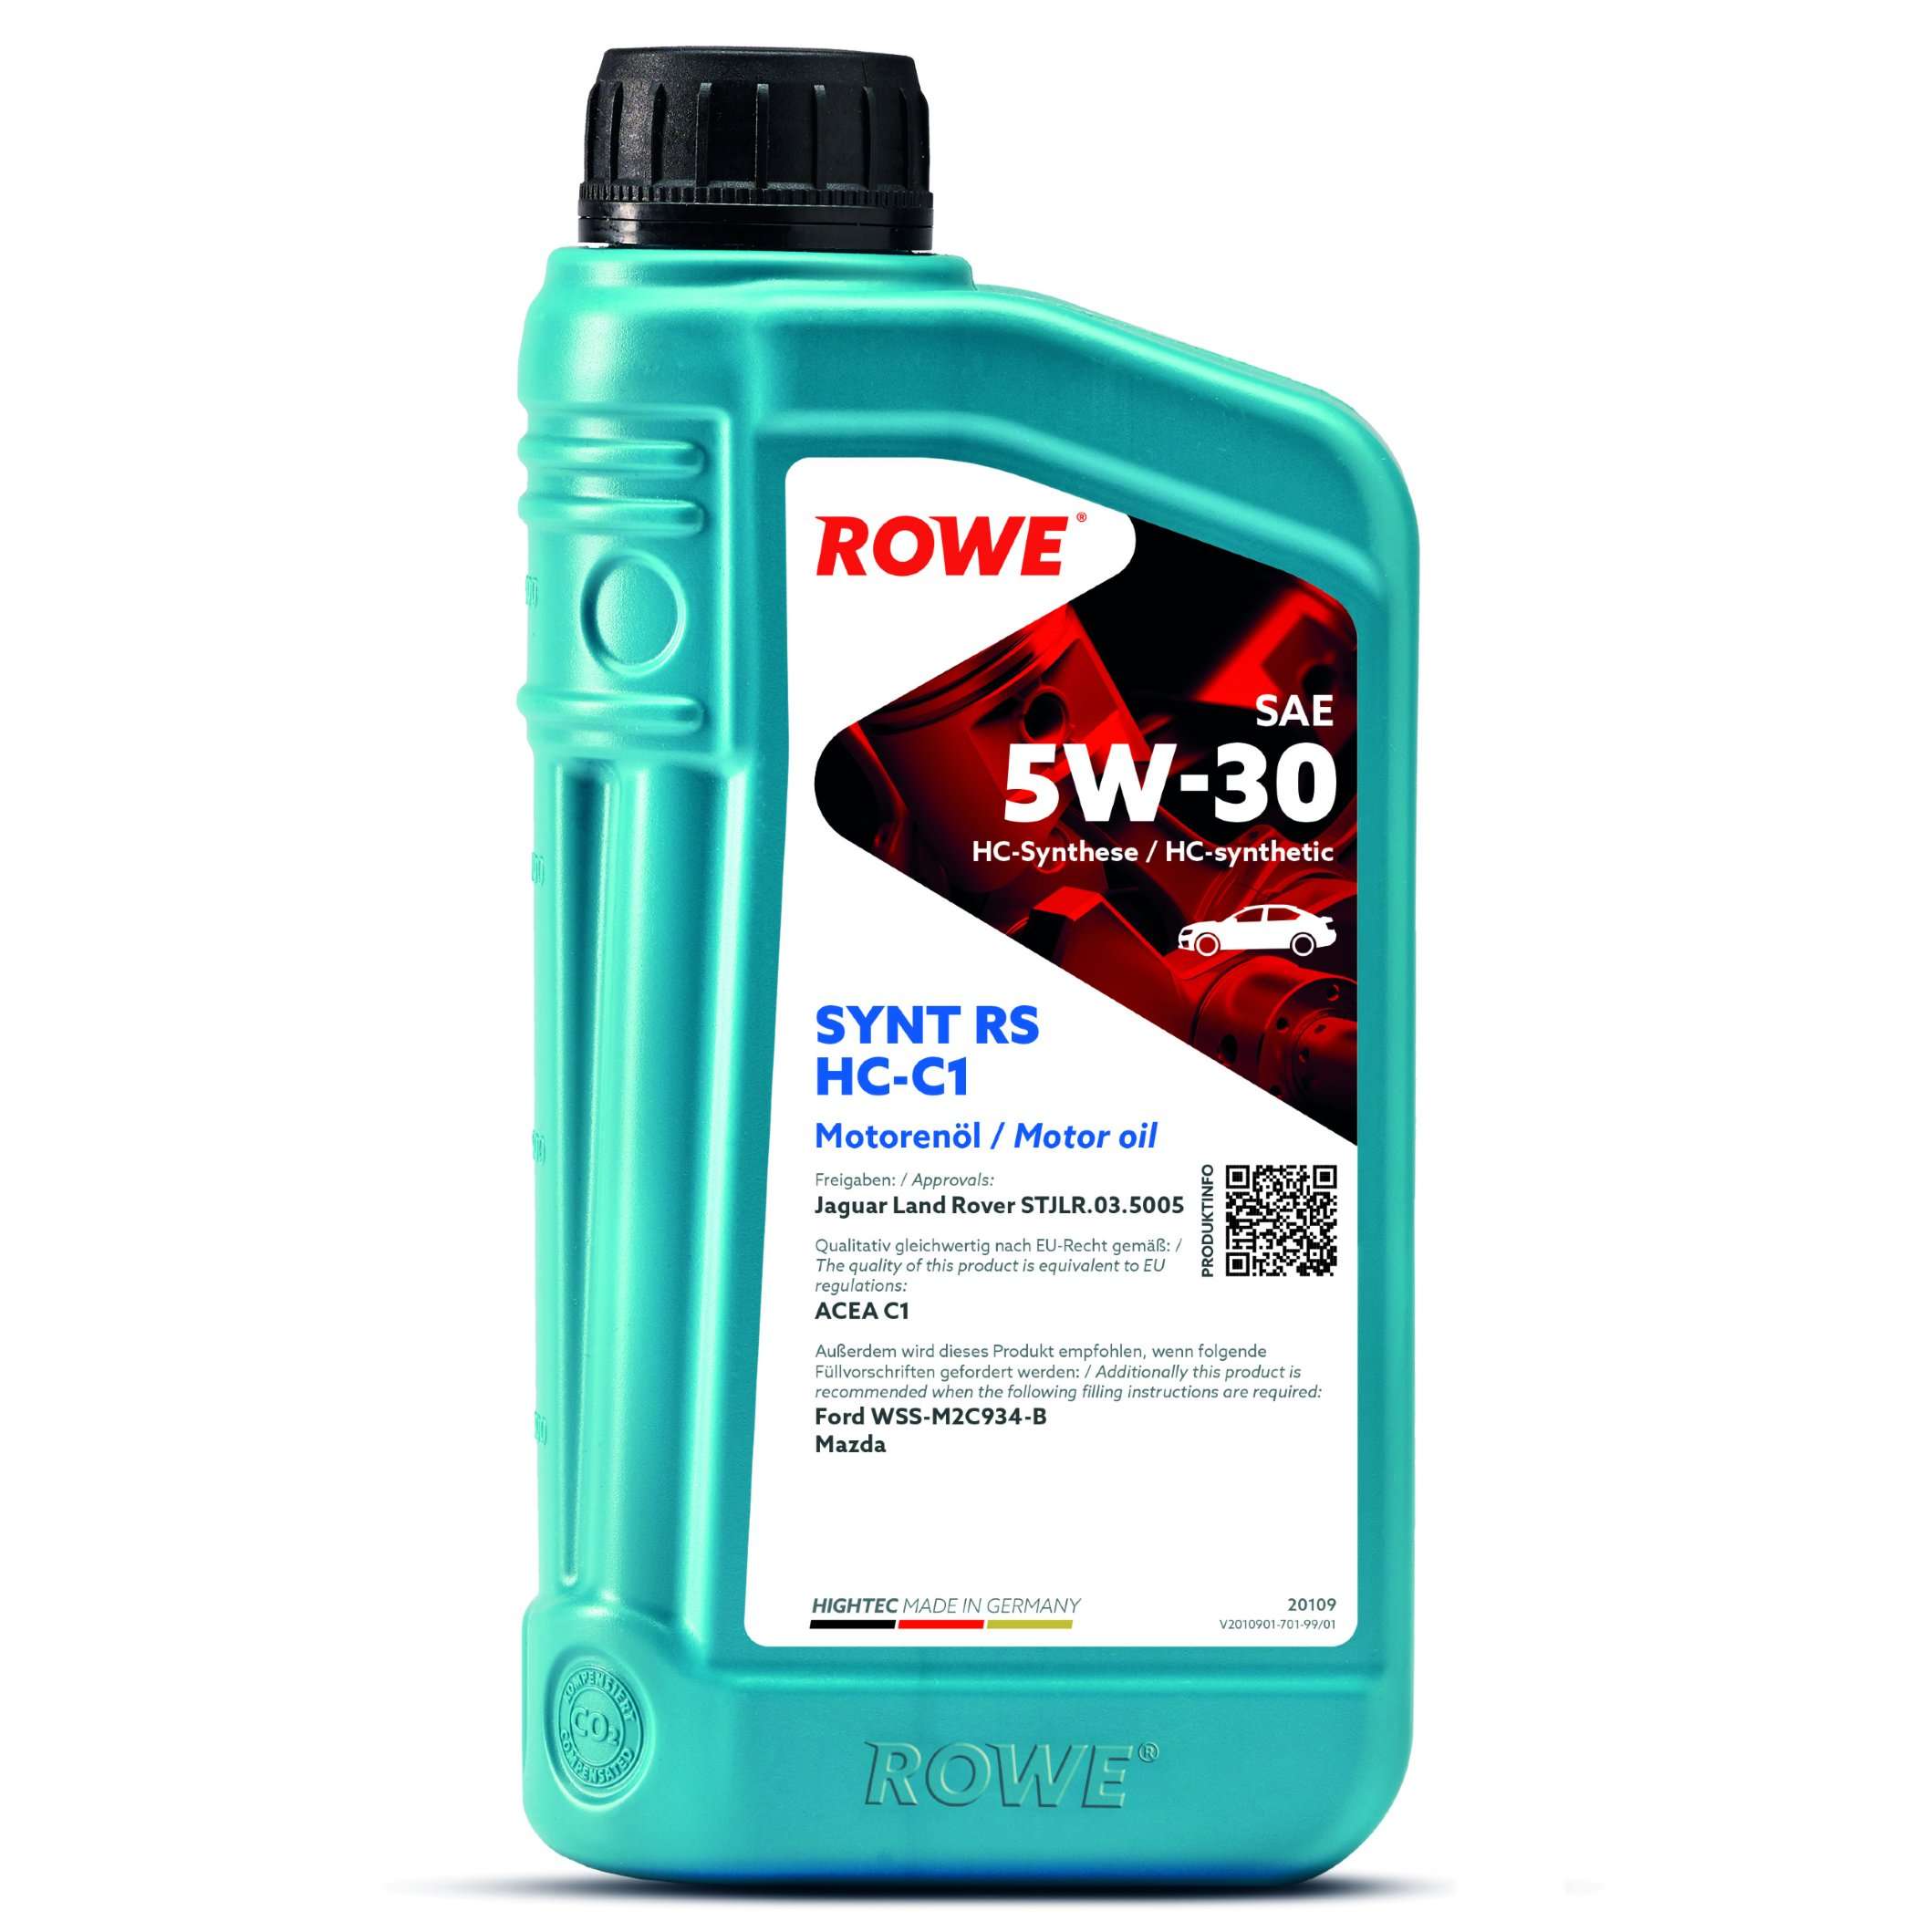 Моторна олива ROWE Synt RS HC-C1 5W-30 1 л, 20109-0010-99